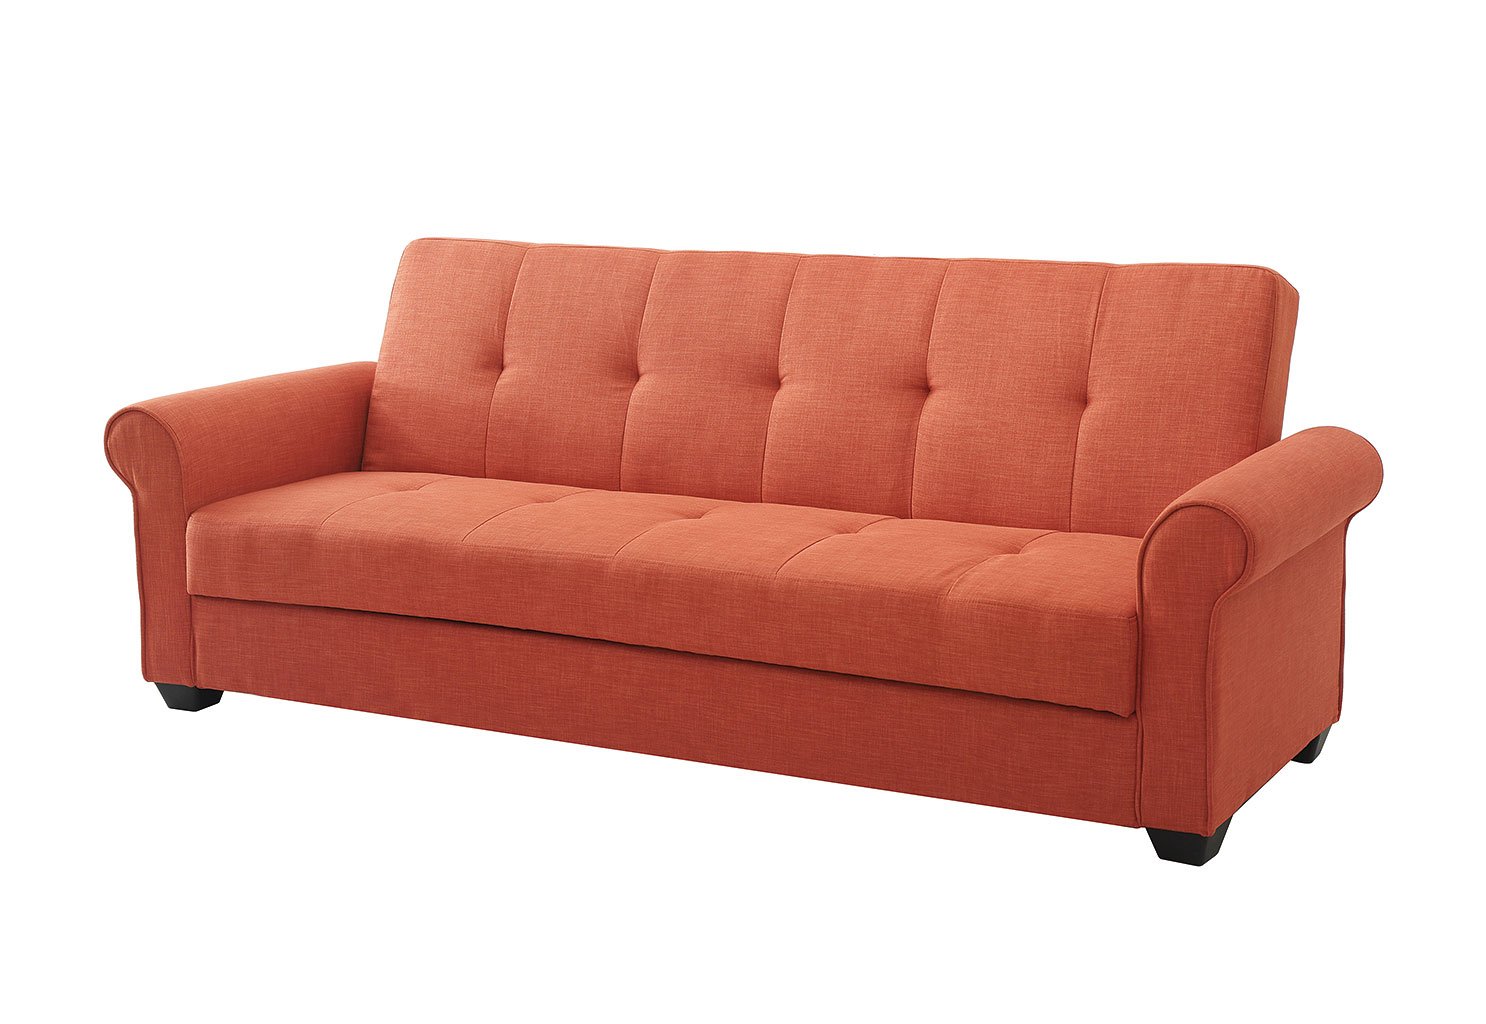 mainstay convertible sofa bed